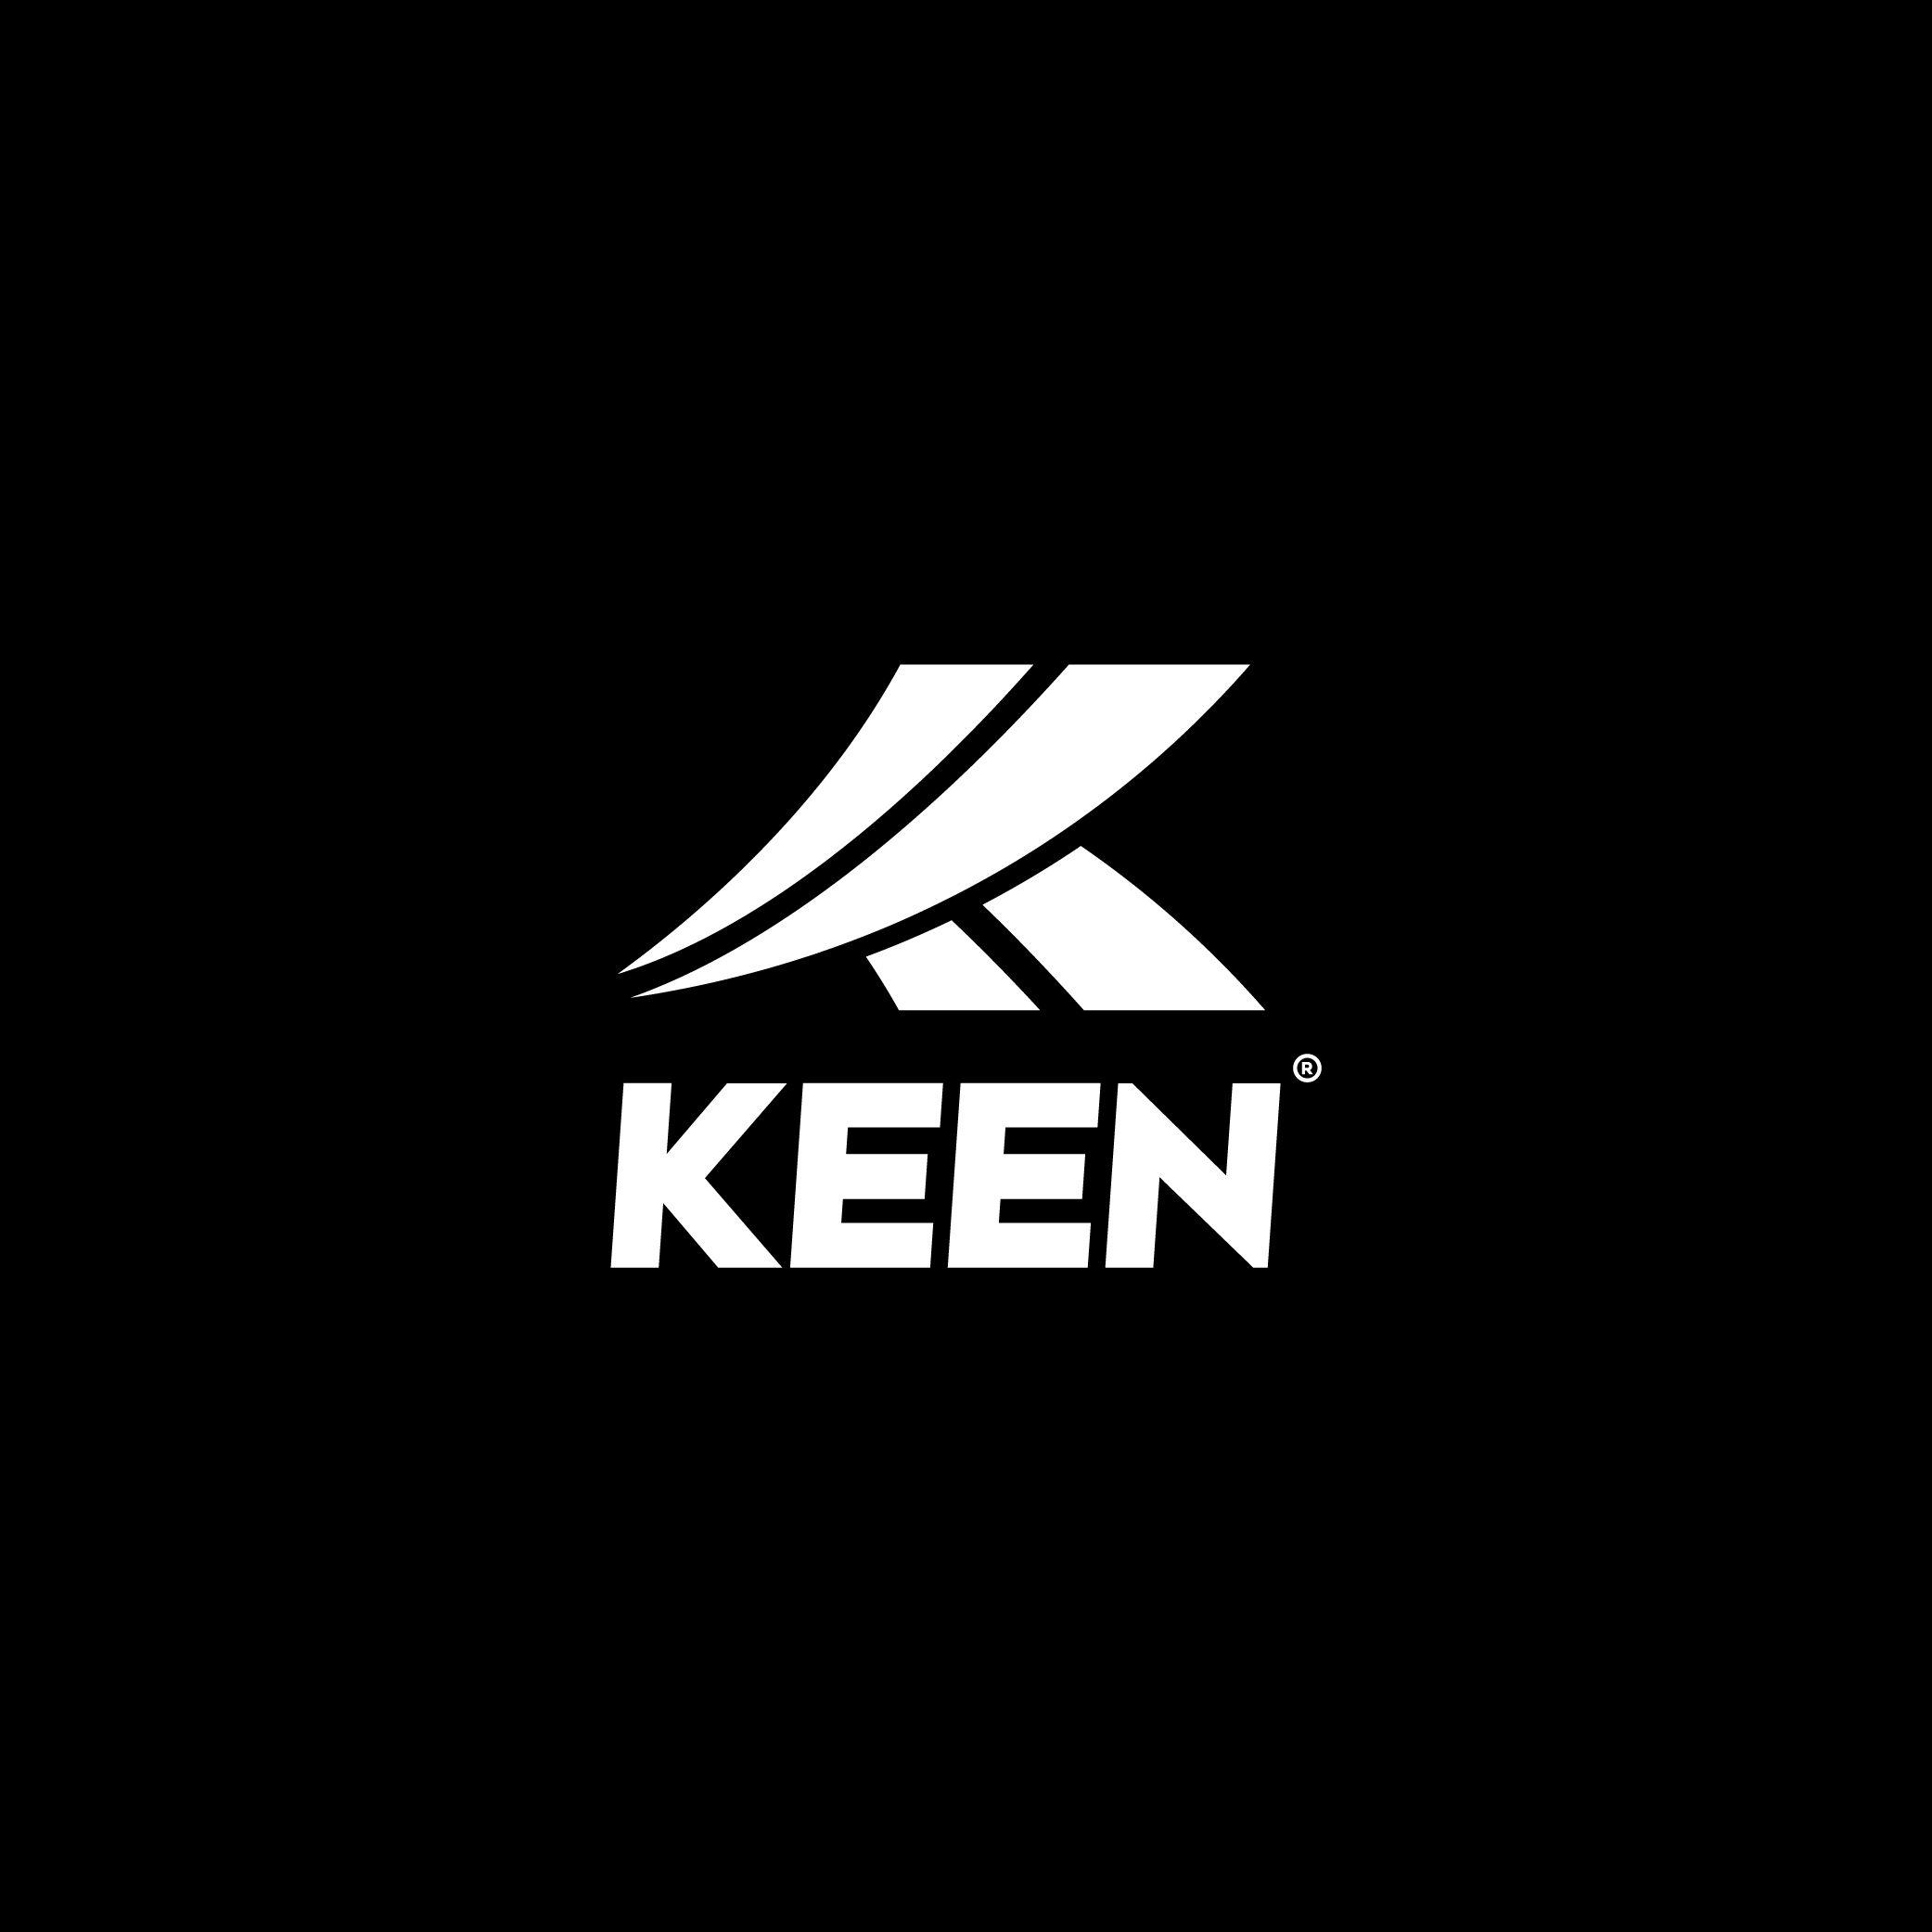 Keen Logo - KEEN LOGO DESIGN